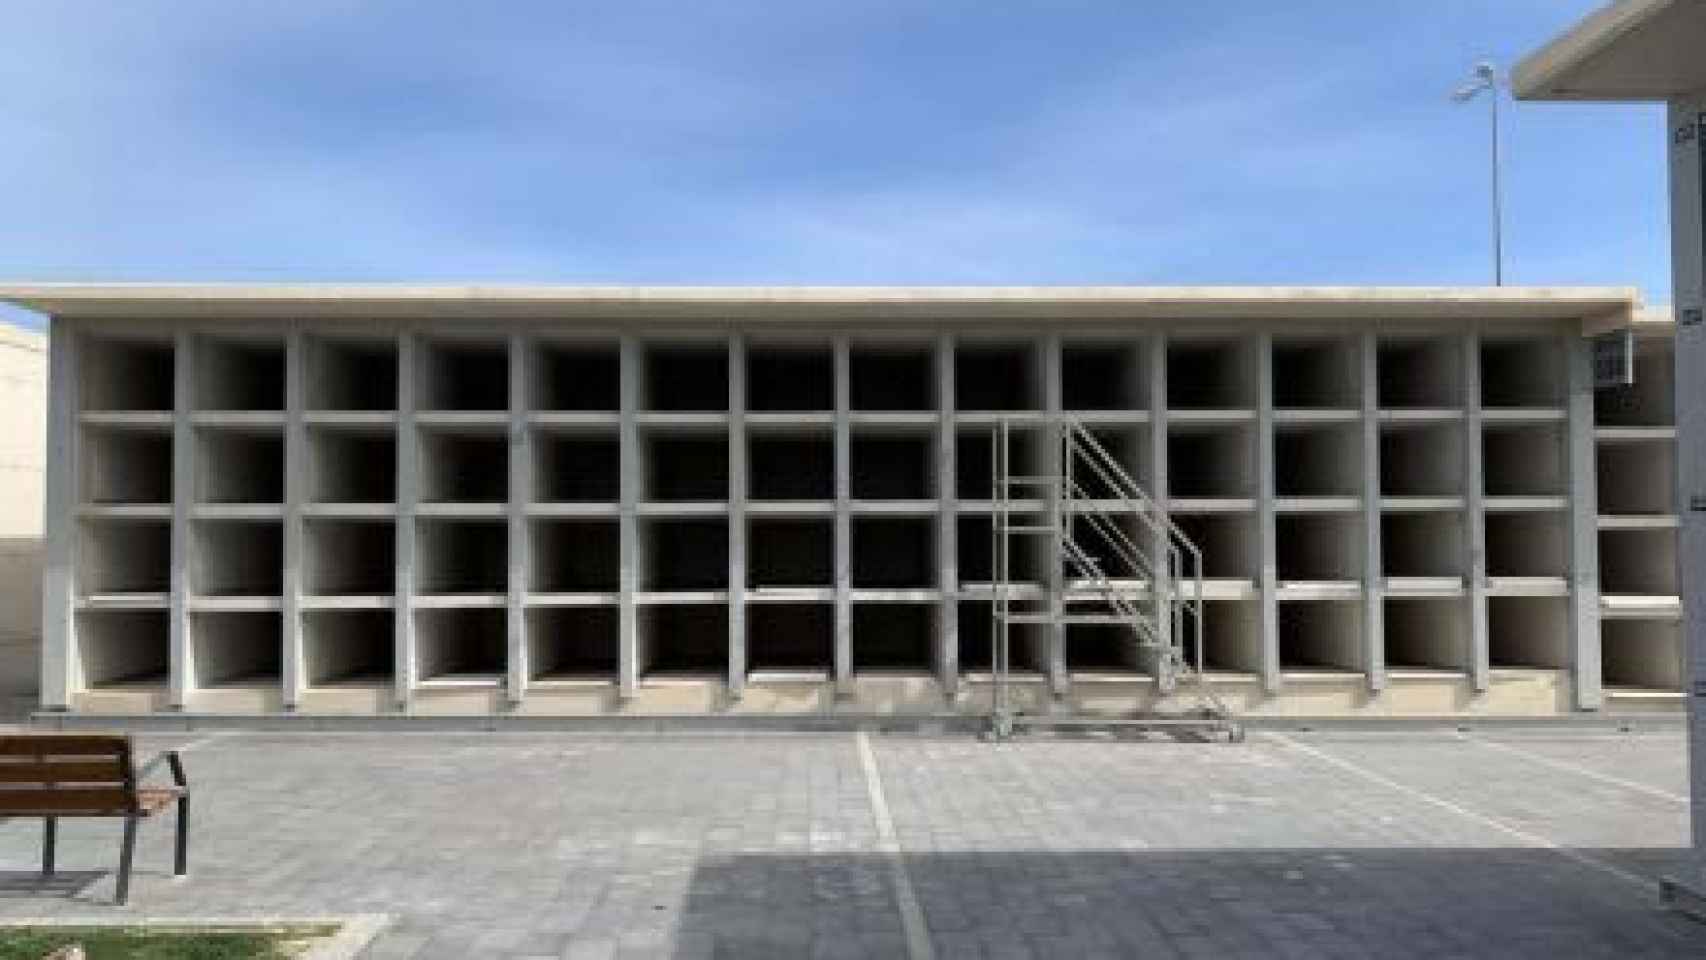 Así será el nuevo aspecto del cementerio de Alicante: 2.550 nuevos nichos y más zonas ajardinadas